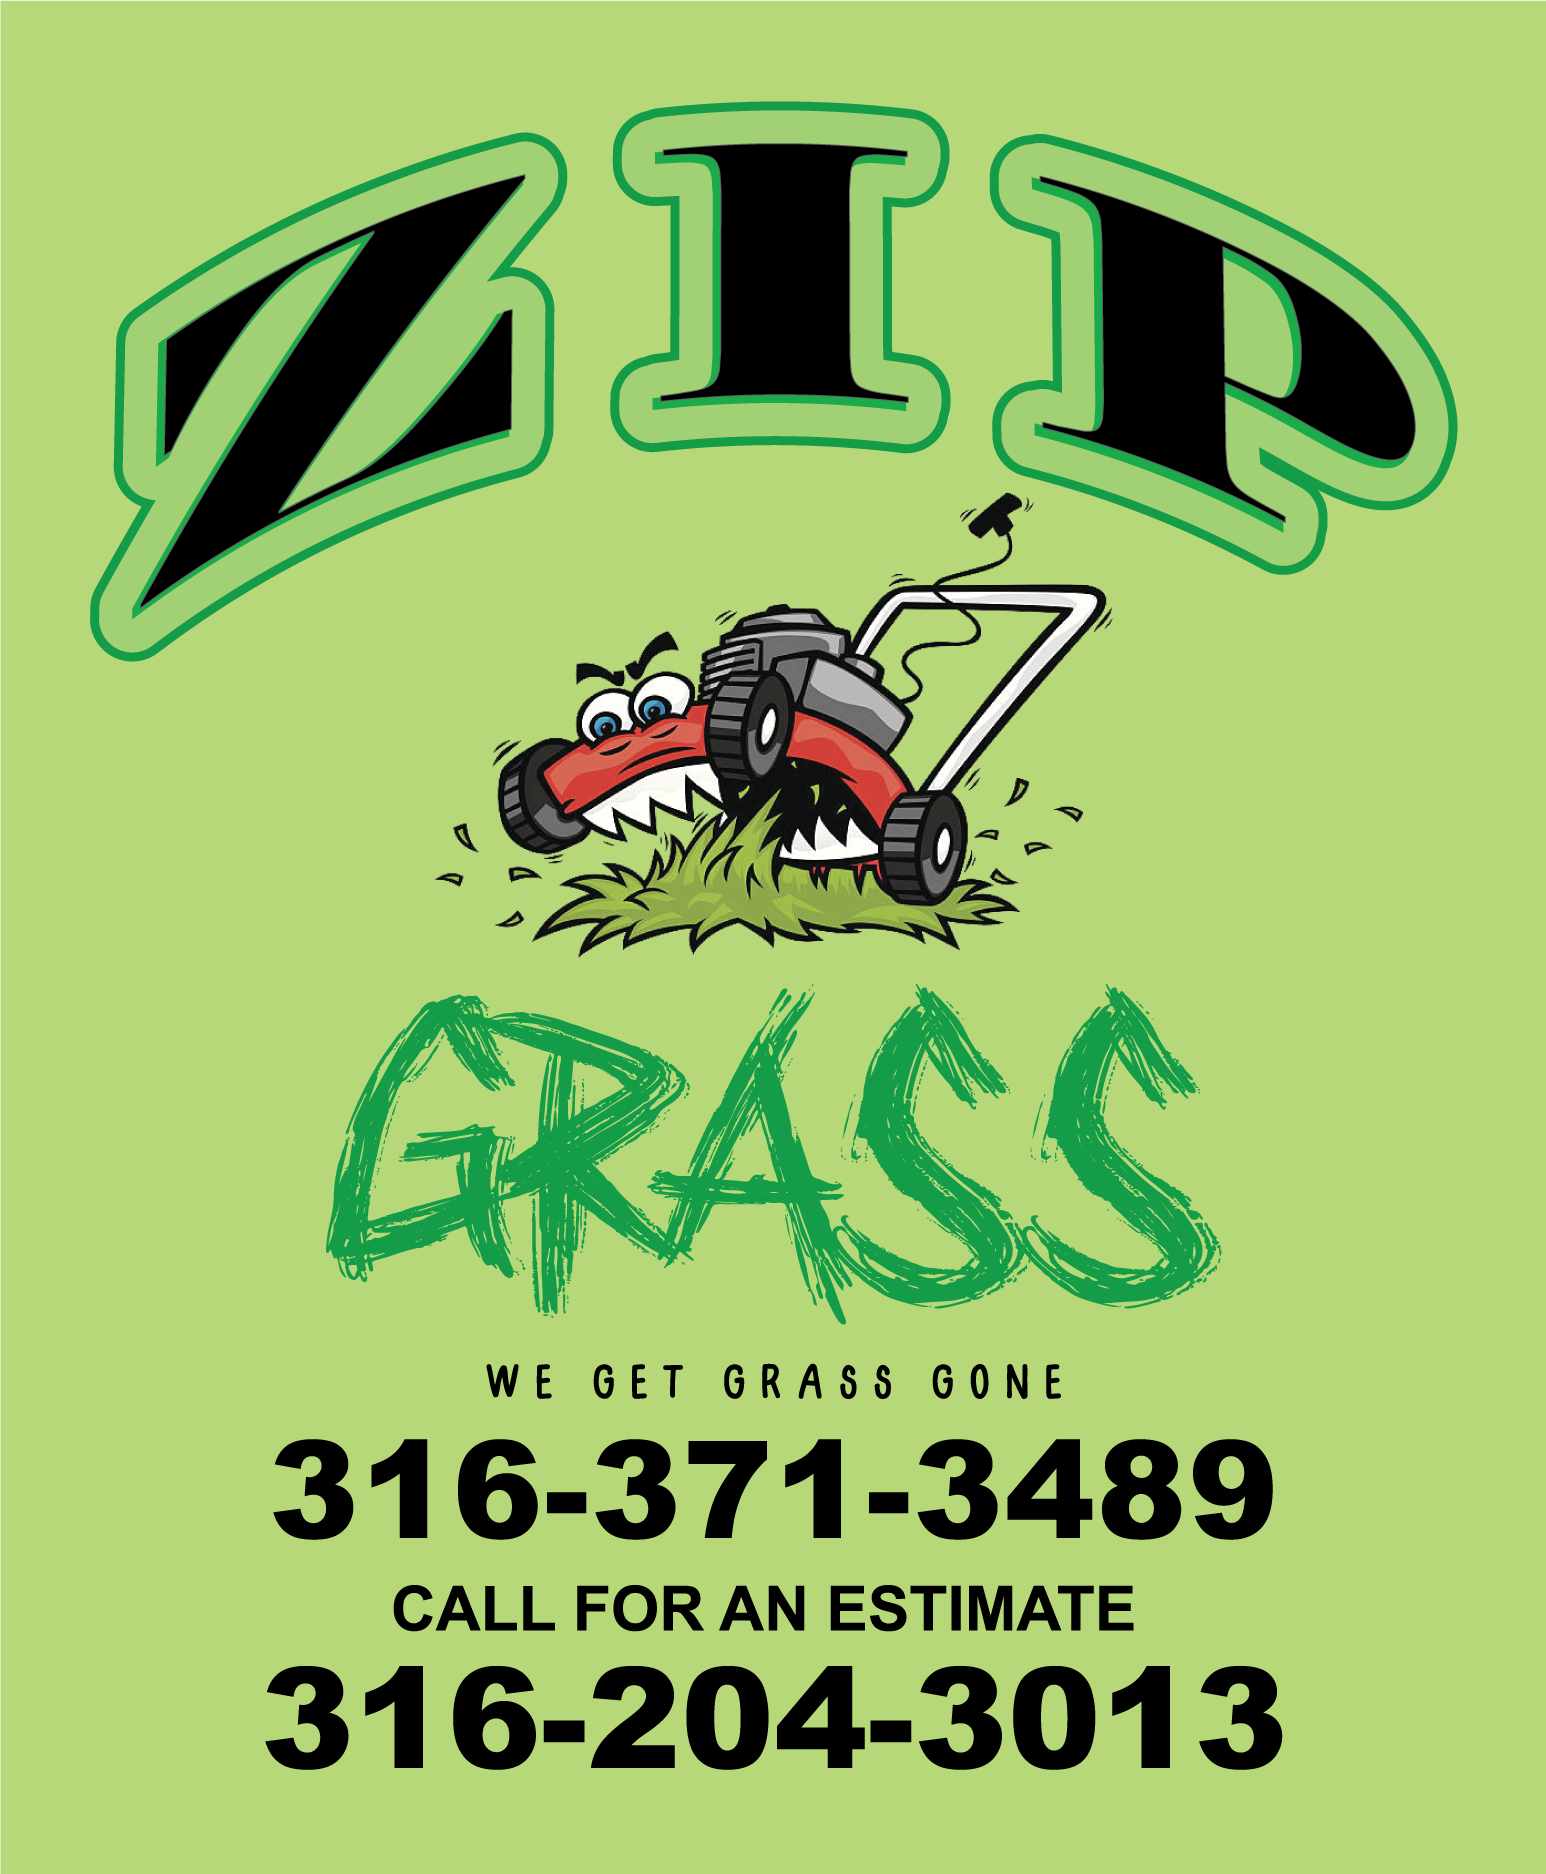 ZIP's Grass Logo